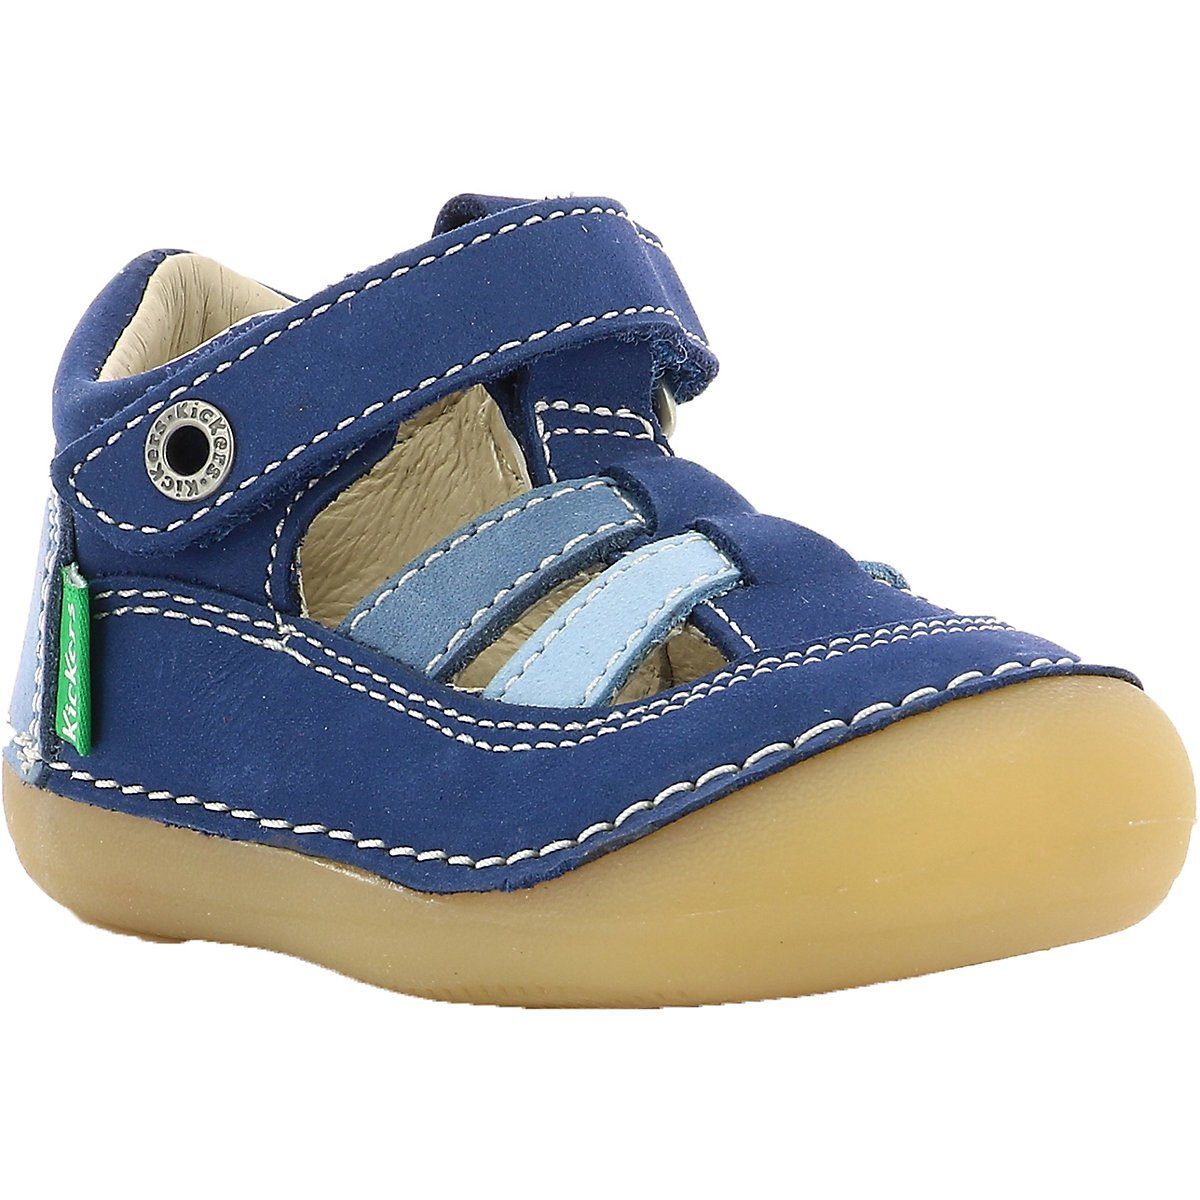 Kickers Baby Schuh online kaufen | OTTO